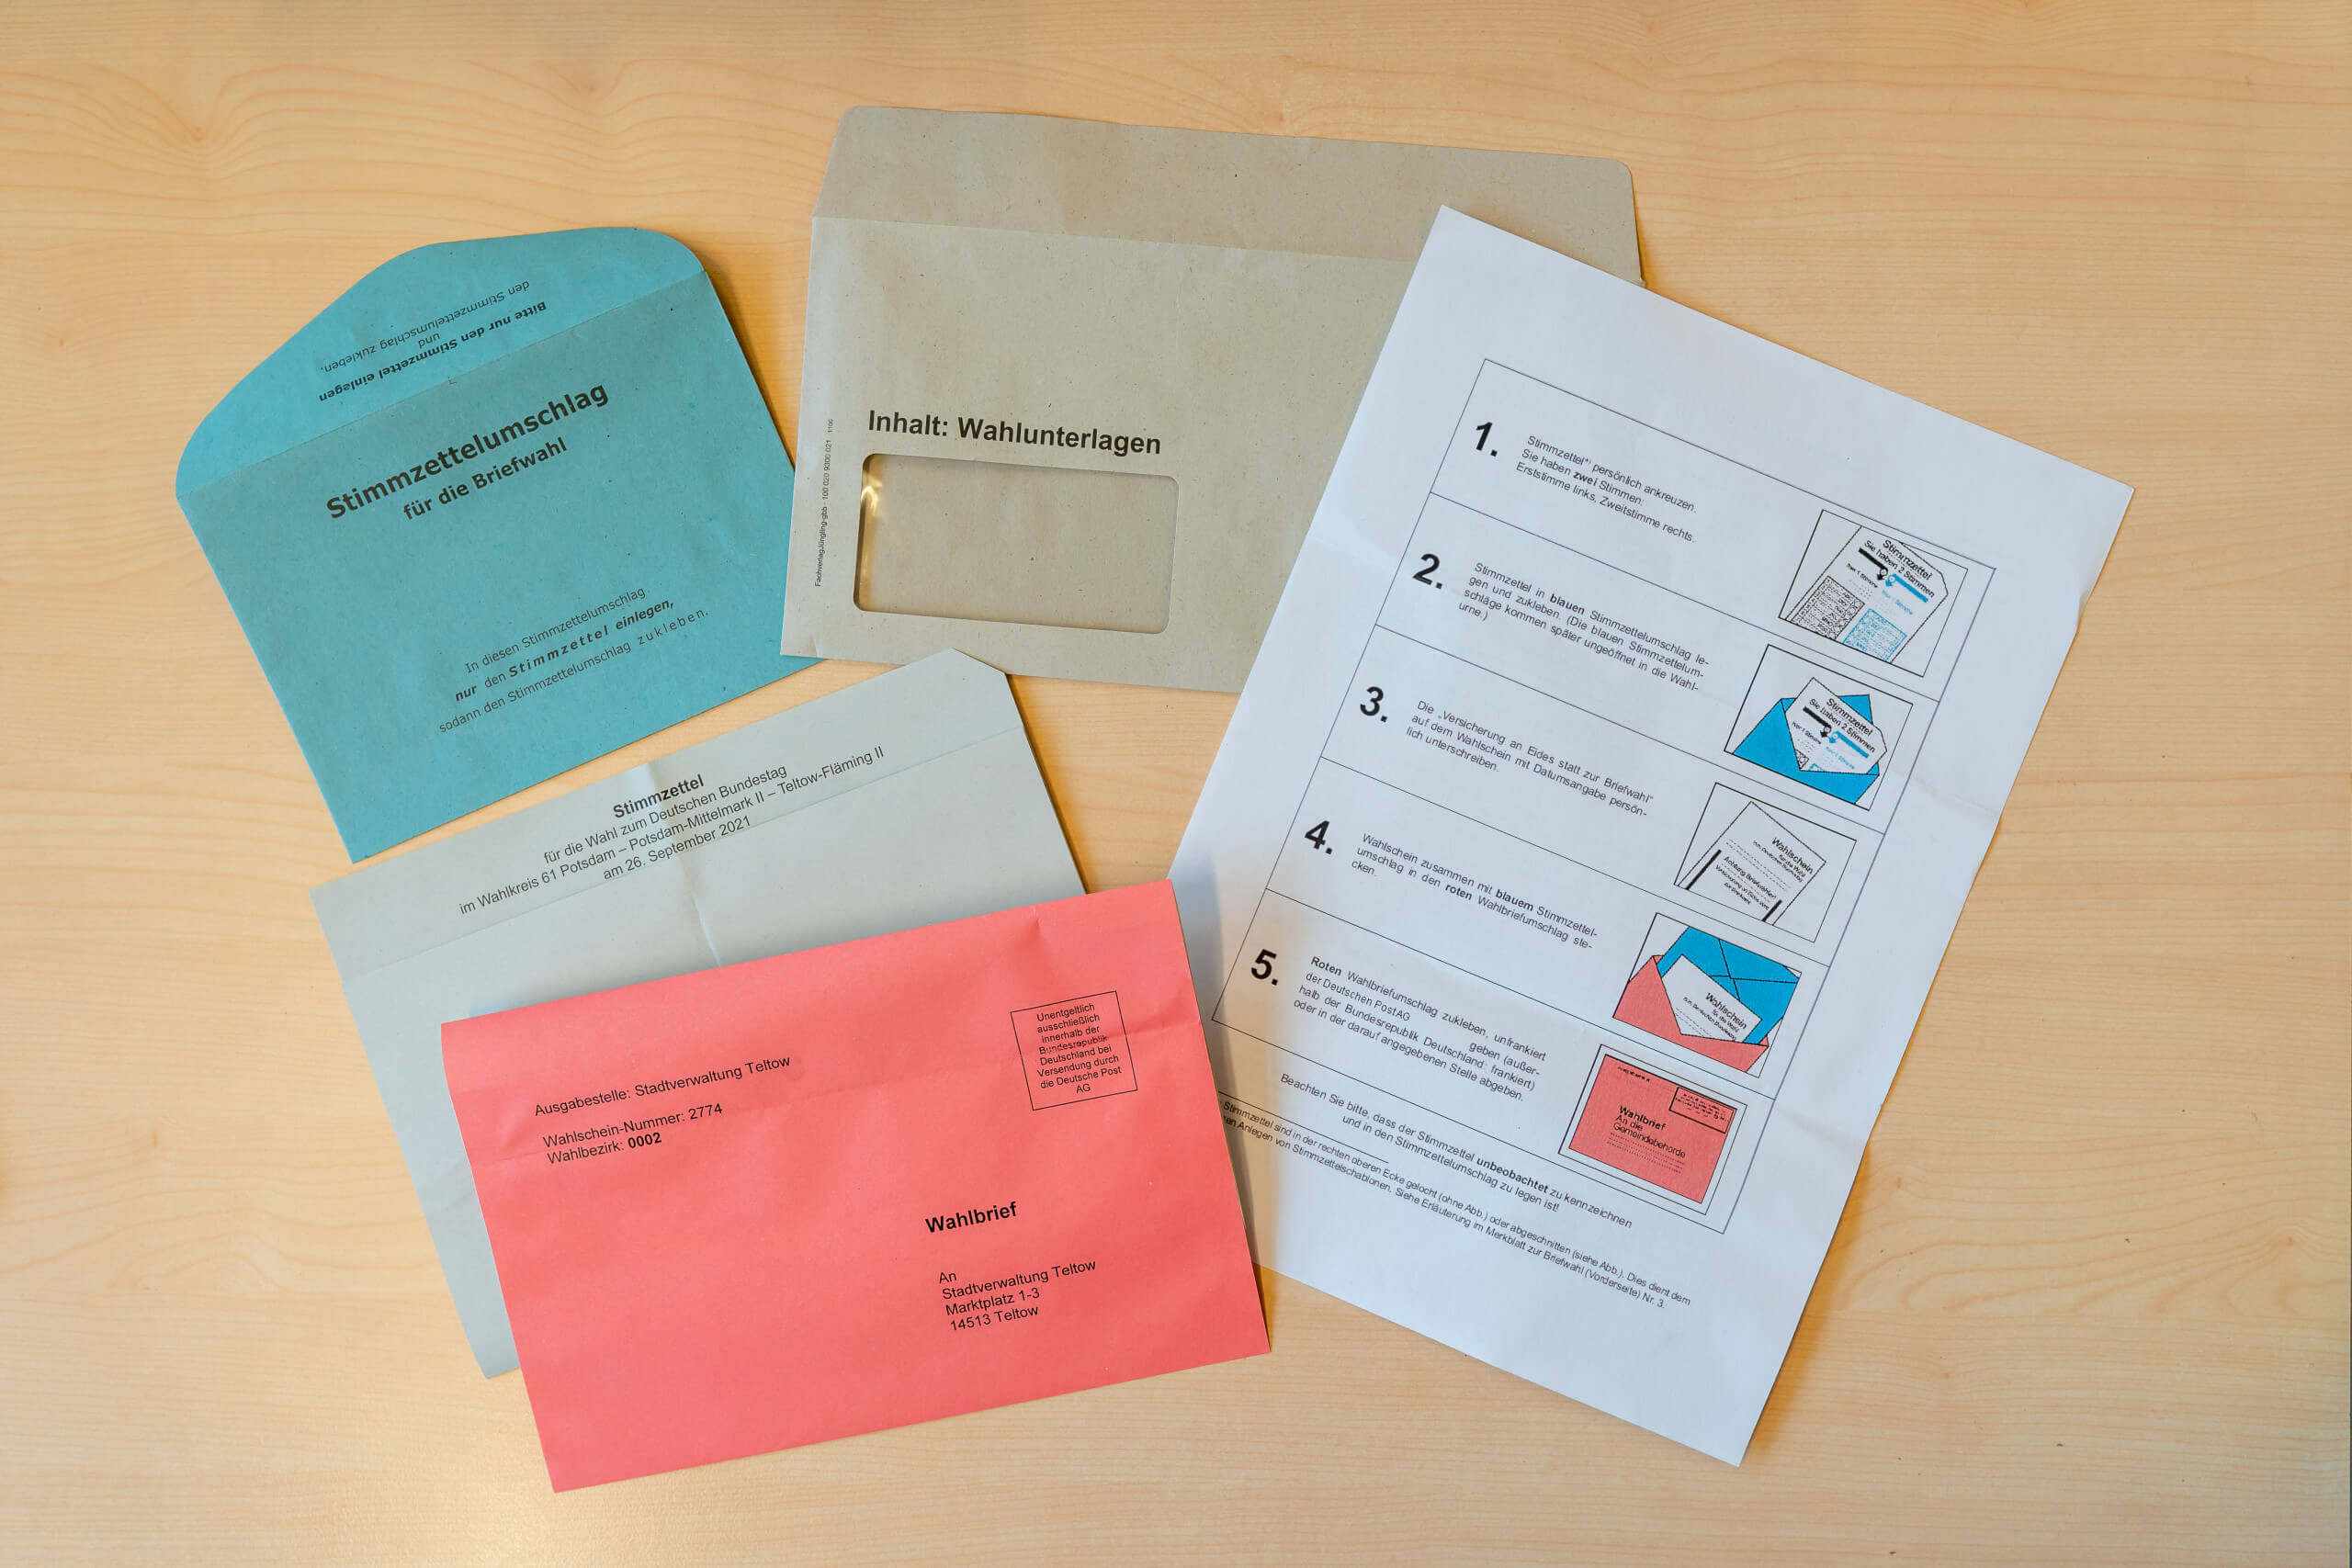 Briefwahlunterlagen für die Bundestagswahl 2021 bestehen aus dem Stimmzettel, dem blauen Stimmzettelumschlag, dem roten Wahlbriefumschlag und dem Wahlschein mit der eidesstattlichen Erklärung (nicht im Bild zu sehen).